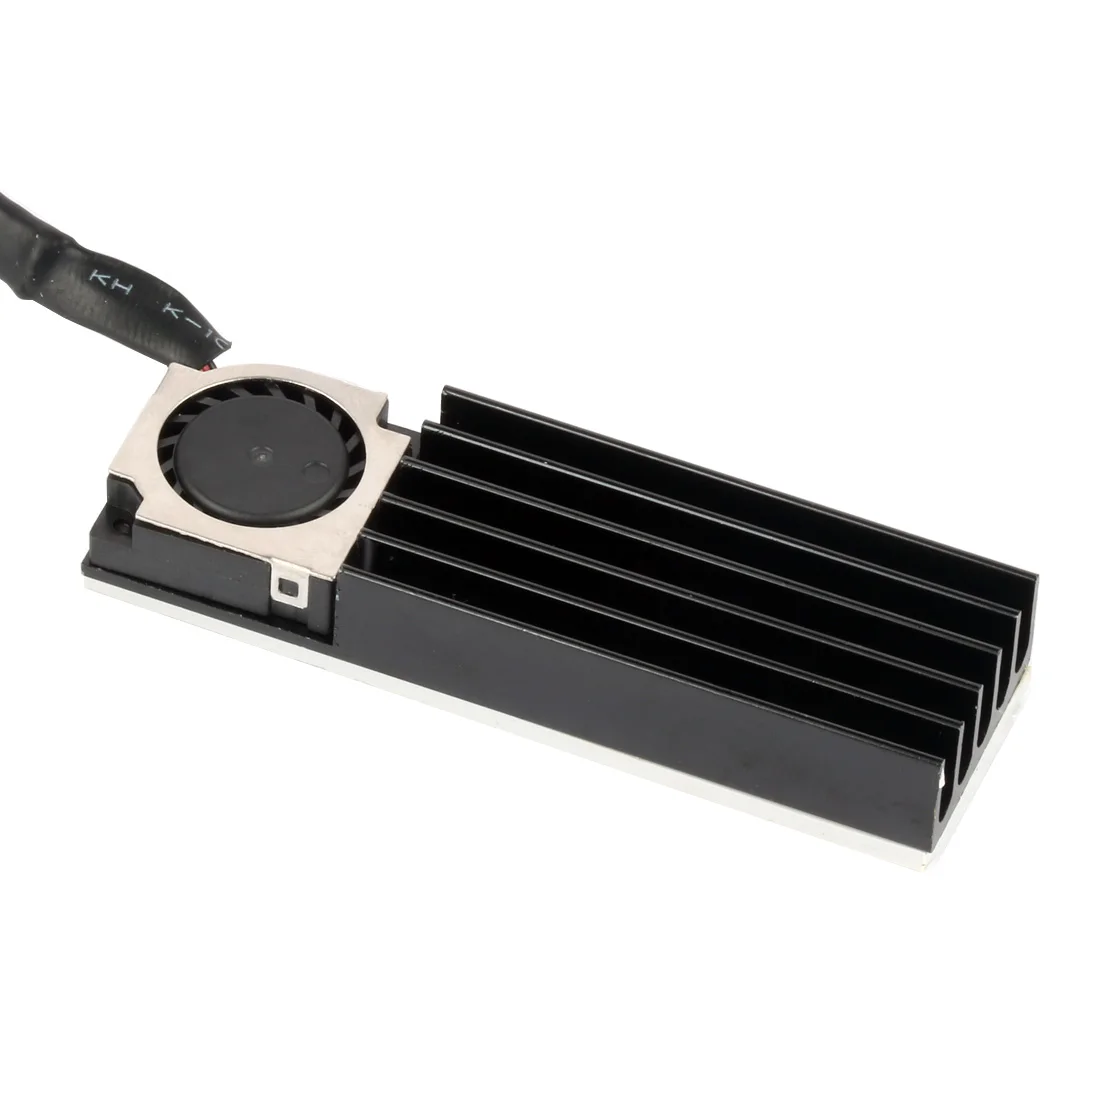 PCIE SSD M.2 2280 радиатор 3 в 1 для SM951 960 961 быстрого охлаждения кулер вентилятор Радиатор ребра тепловой колодки 3 pin шнур питания